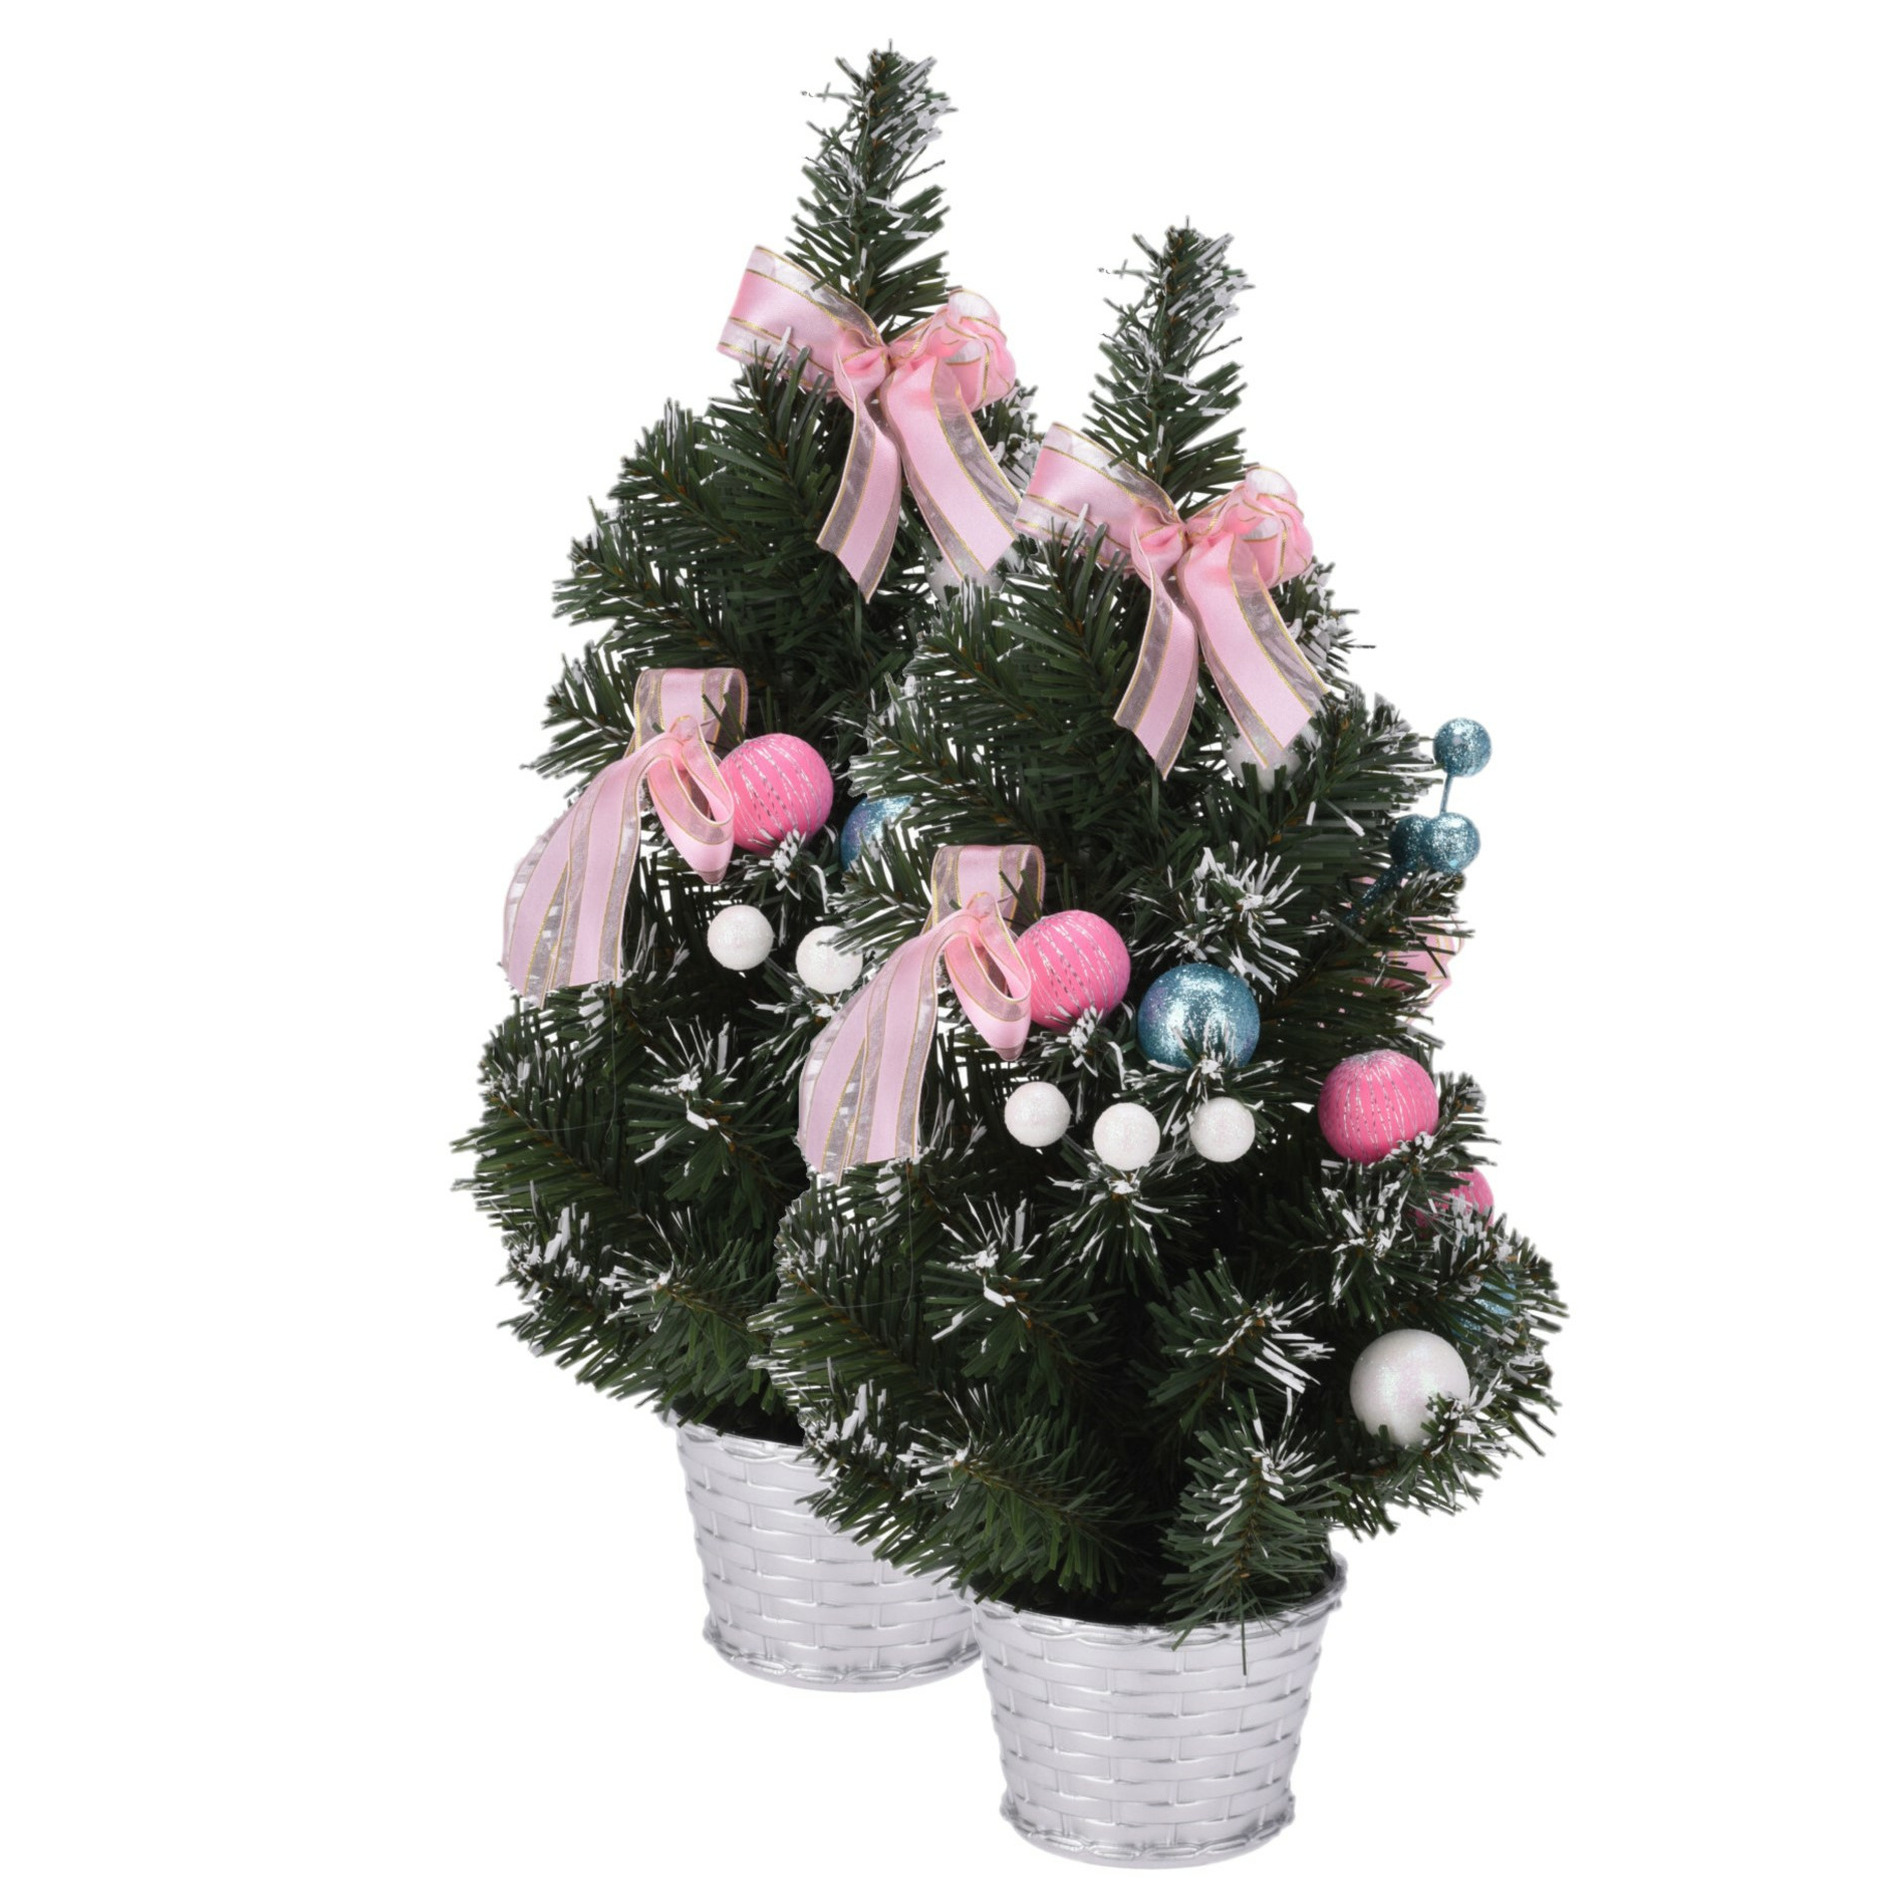 2x stuks kunstbomen-kunst kerstbomen inclusief kerstversiering 40 cm kerstversiering